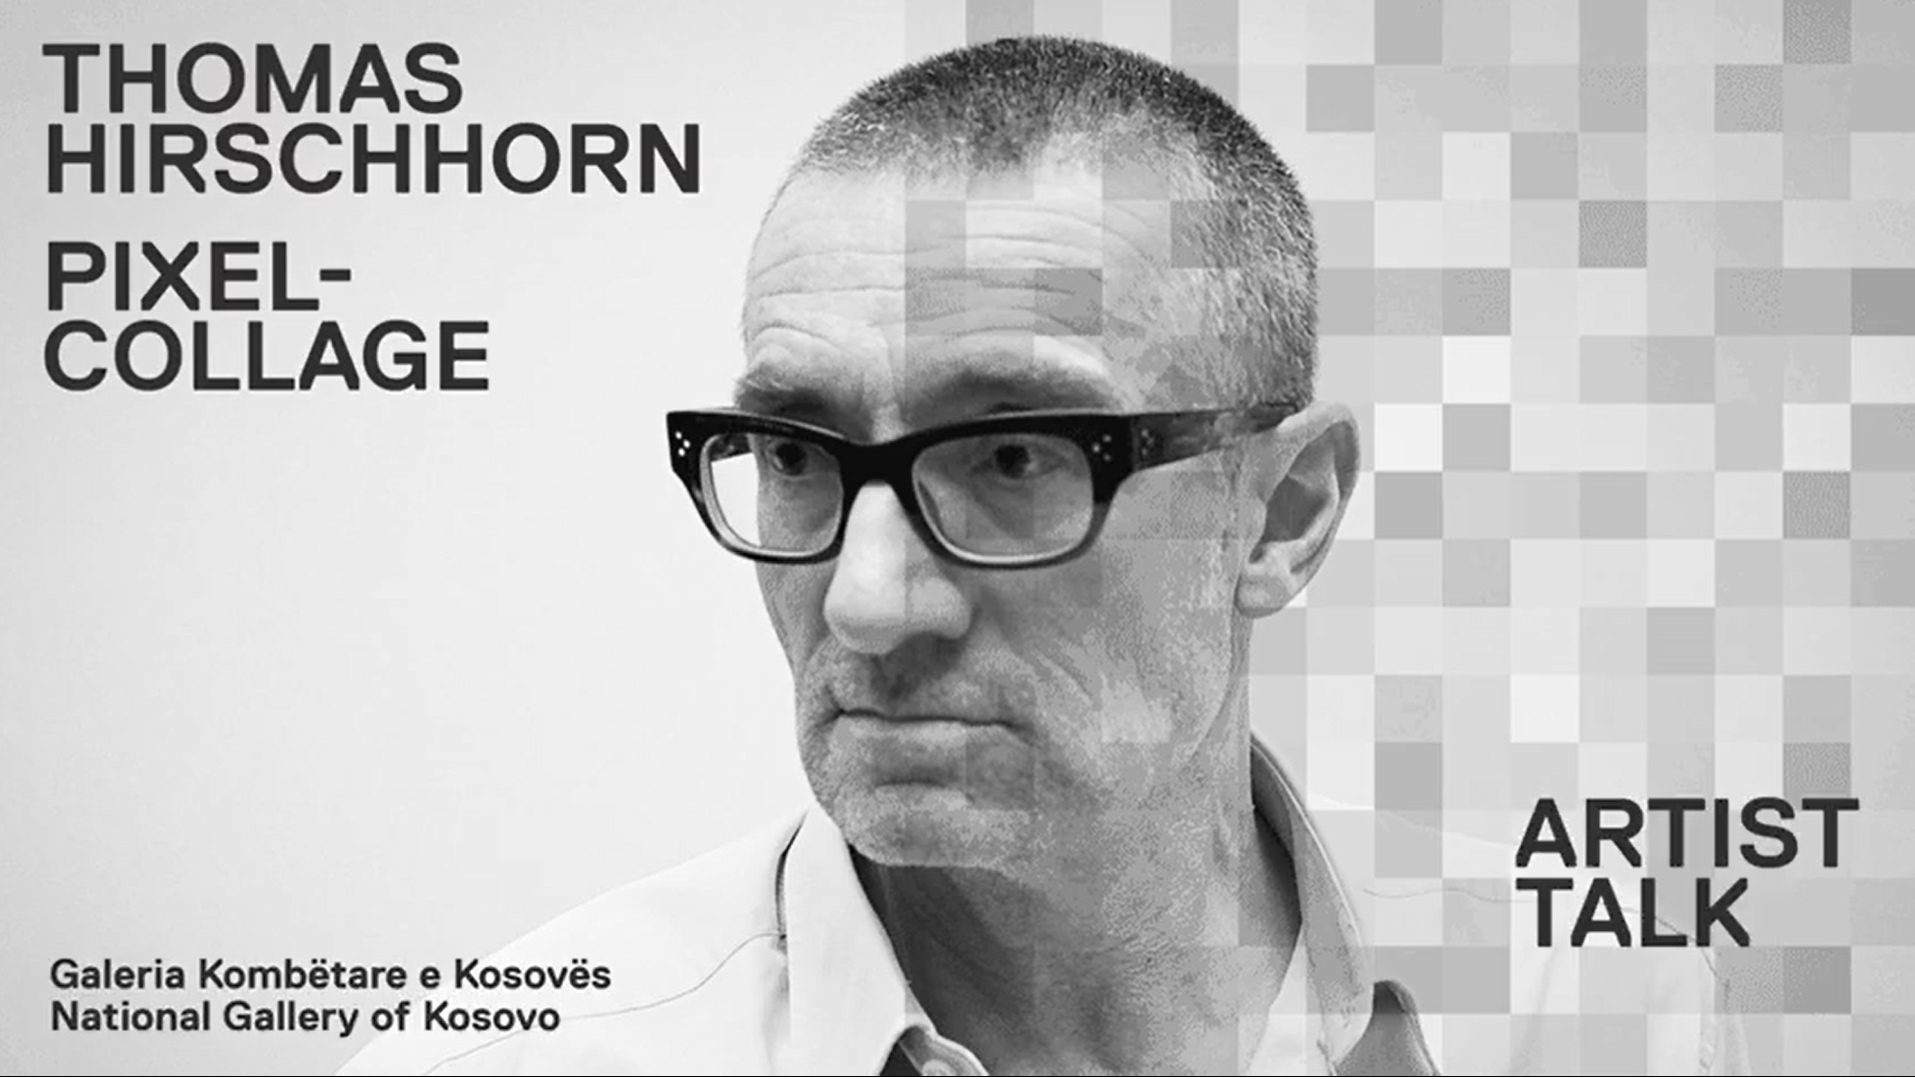 Bisedë me artistin: Thomas Hirschhorn në Galerinë Kombëtare të Kosovës